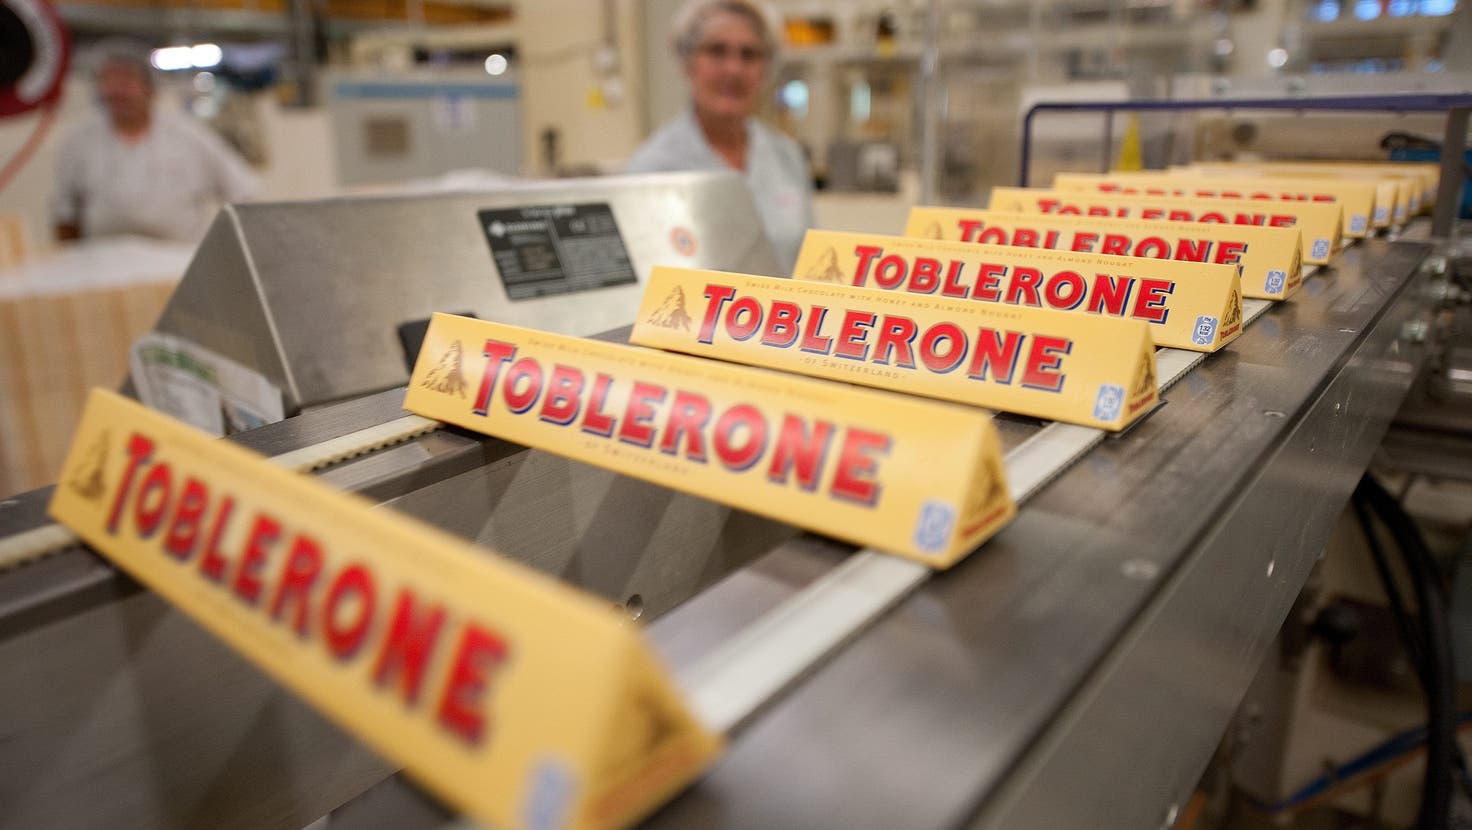 Sämtliche in die Welt exportierte Toblerone wird im Werk in Bern produziert. Zumindest noch: Ab Sommer wird ein Teil der Produktion aus Kosten- und Platzgründen in die Slowakei verlegt. (Dominic Favre / KEYSTONE)